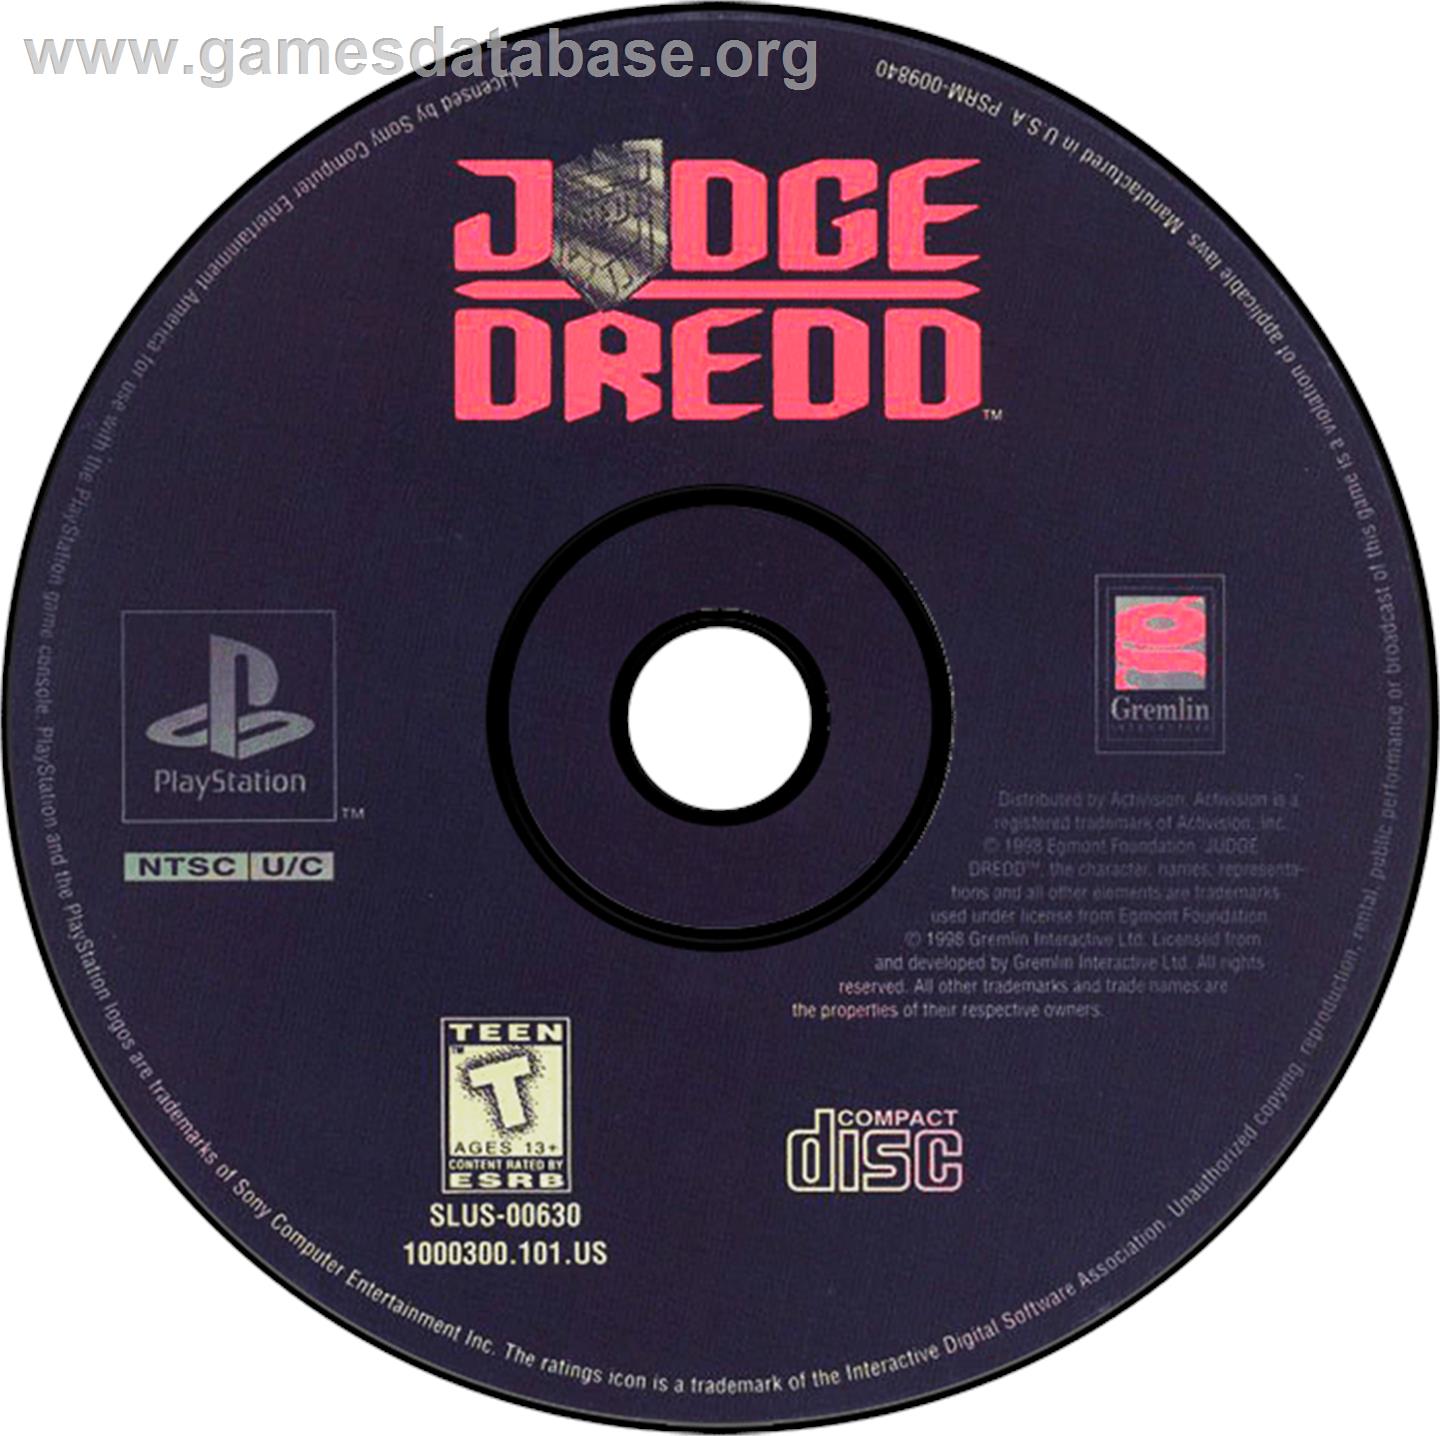 Judge Dredd - Sony Playstation - Artwork - Disc